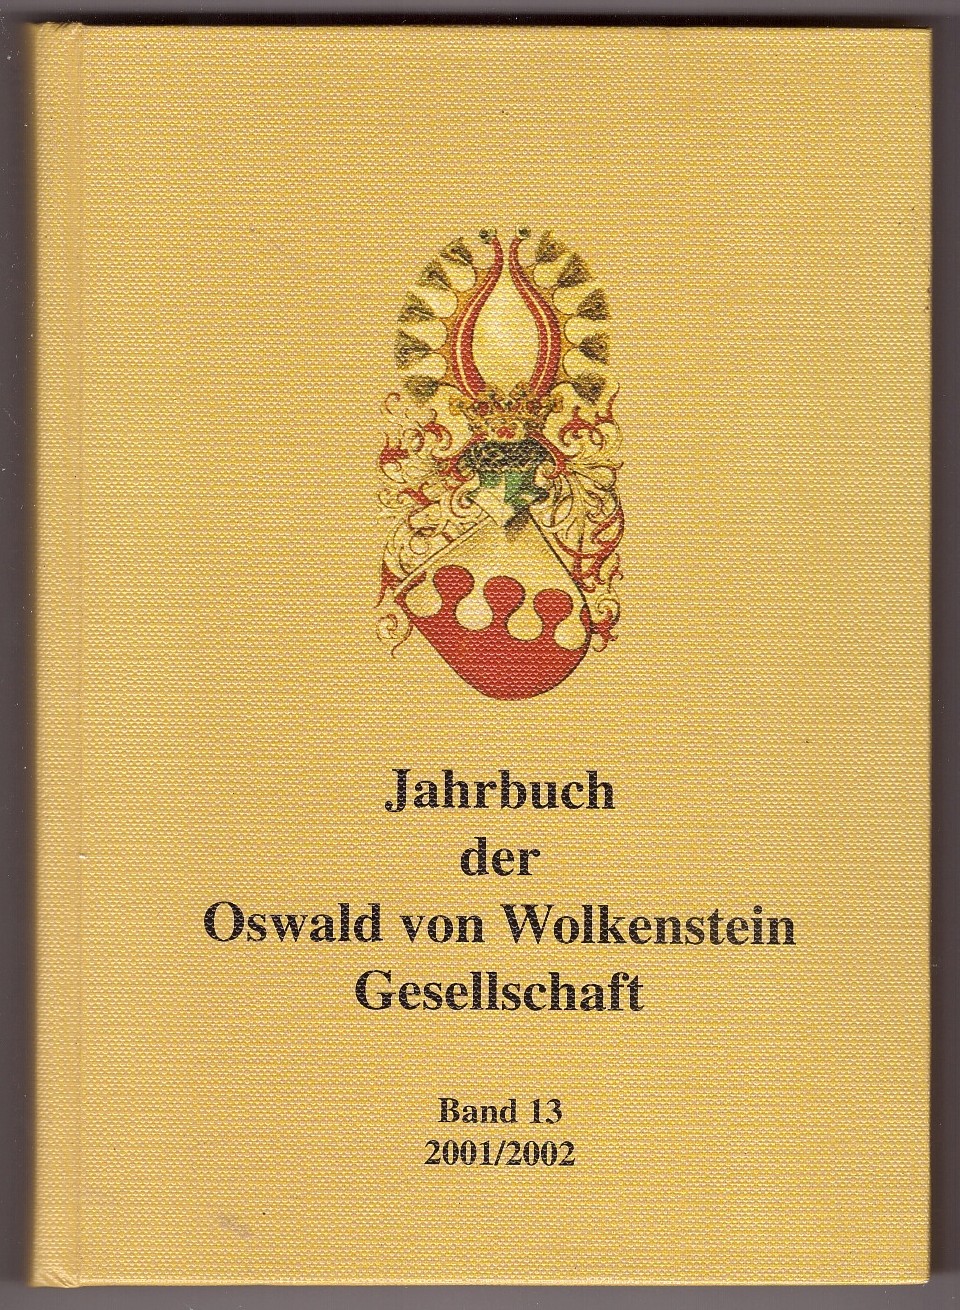 HARTMANN, SIEGLINDE & ULRICH MLLER (EDITORS) - Jahrbuch Der Oswald Von Wolkenstein Gesellschaft Band 13 2001/2002